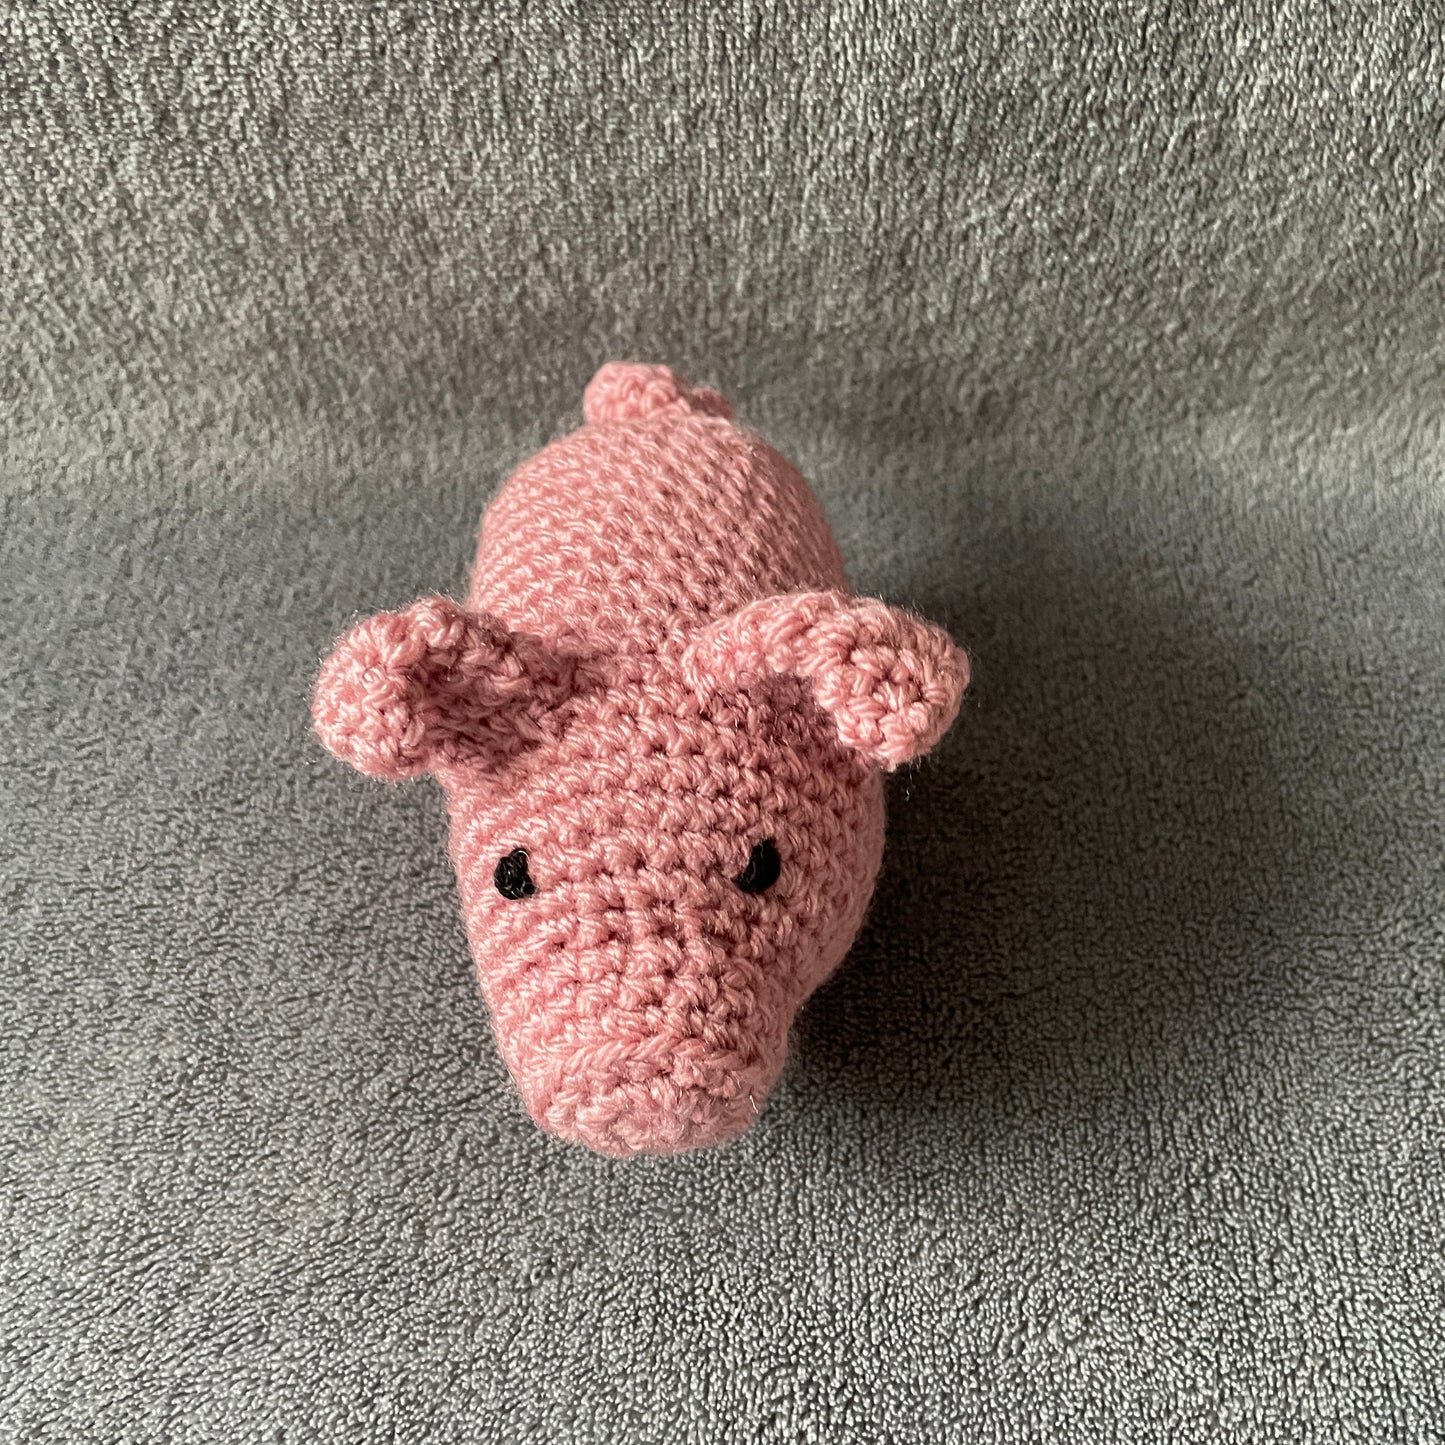 Poppy the Pig Soft Toy